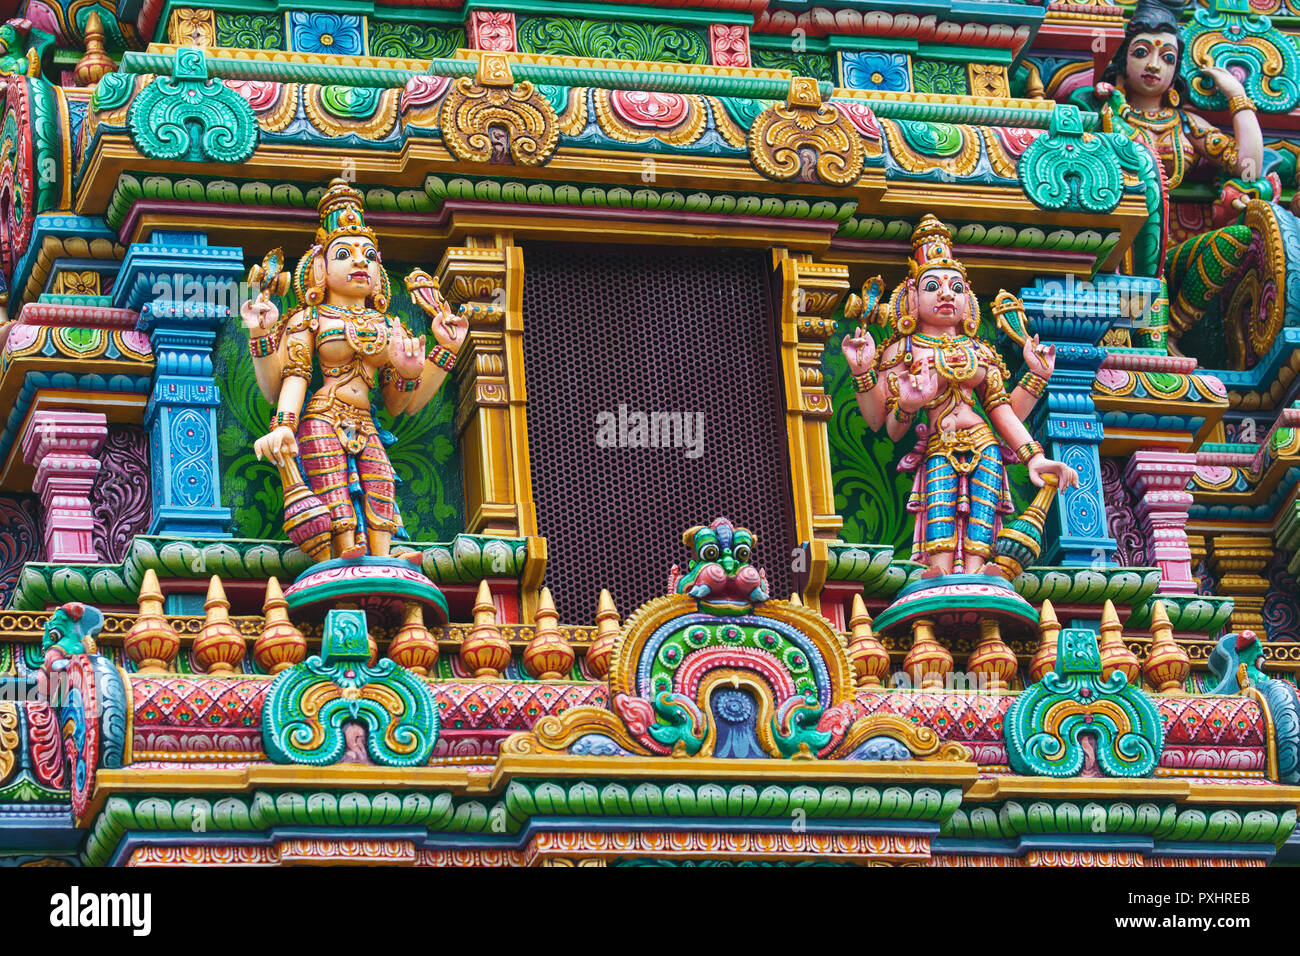 Deities on the gopura of the Mariamman Temple in Bangkok, Thailand. Stock Photo